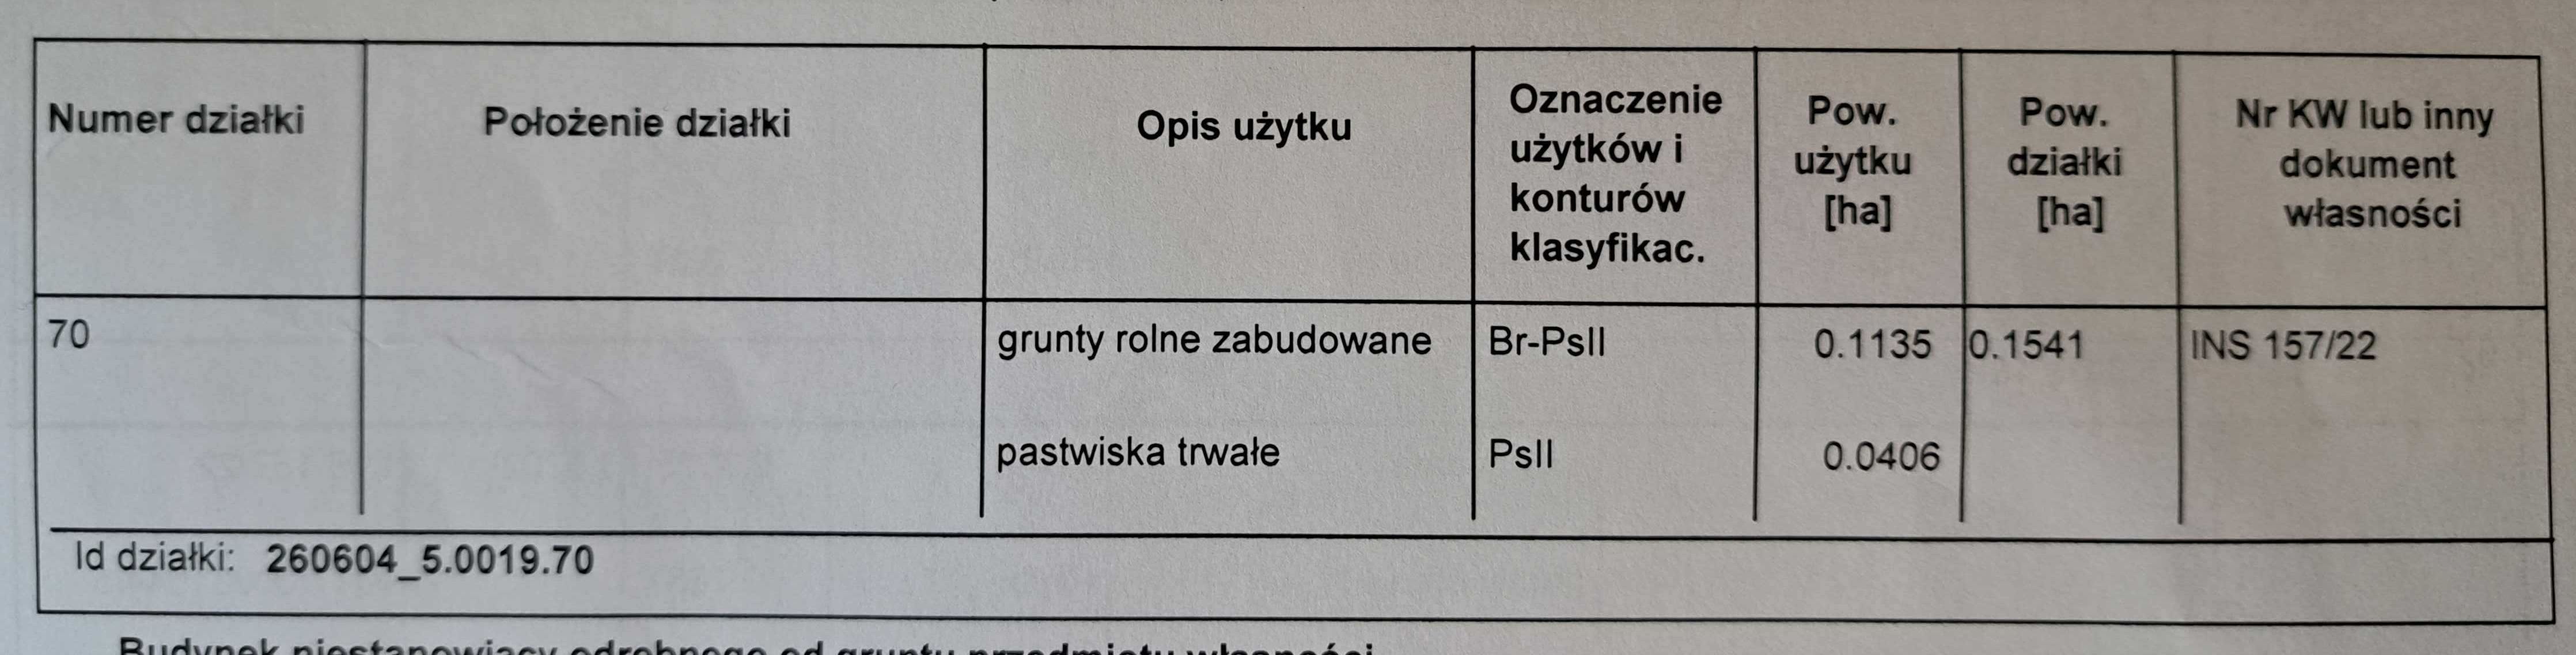 Nieruchomość w miejscowości Oficjałów k. Opatowa